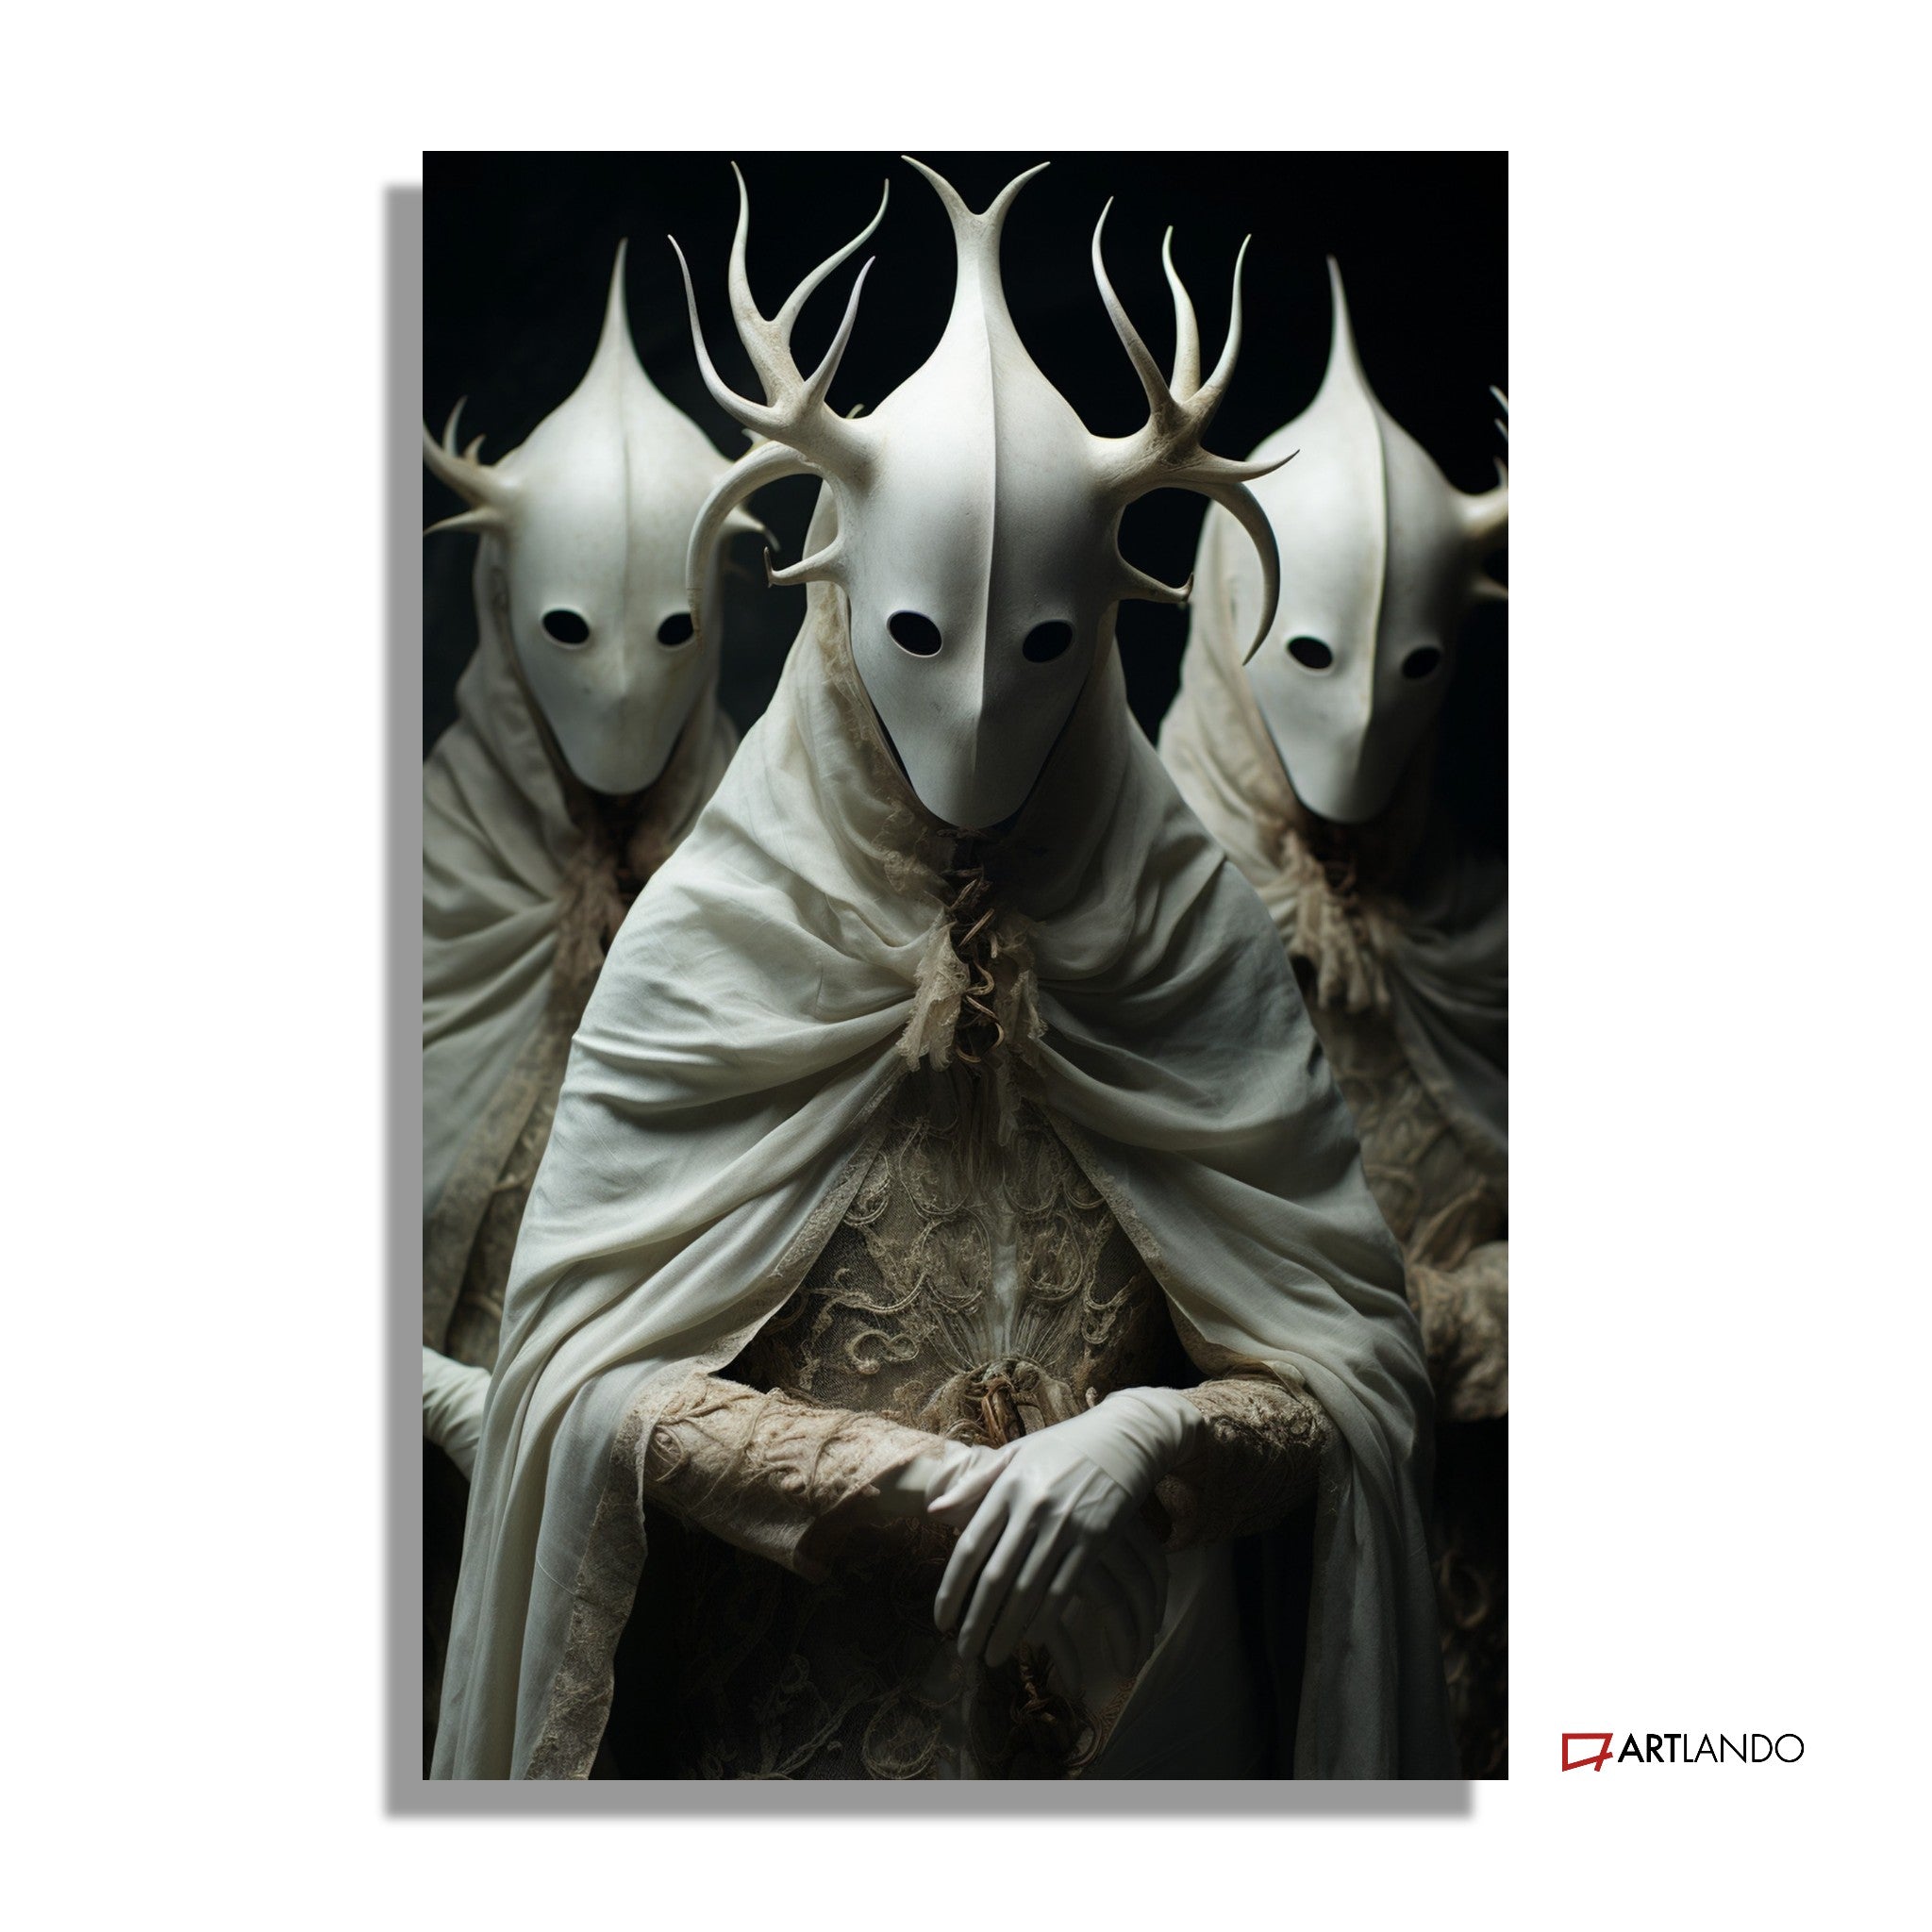 Drei unheimliche weiße maskierte Gestalten mit Geweih - Beksinski Stil